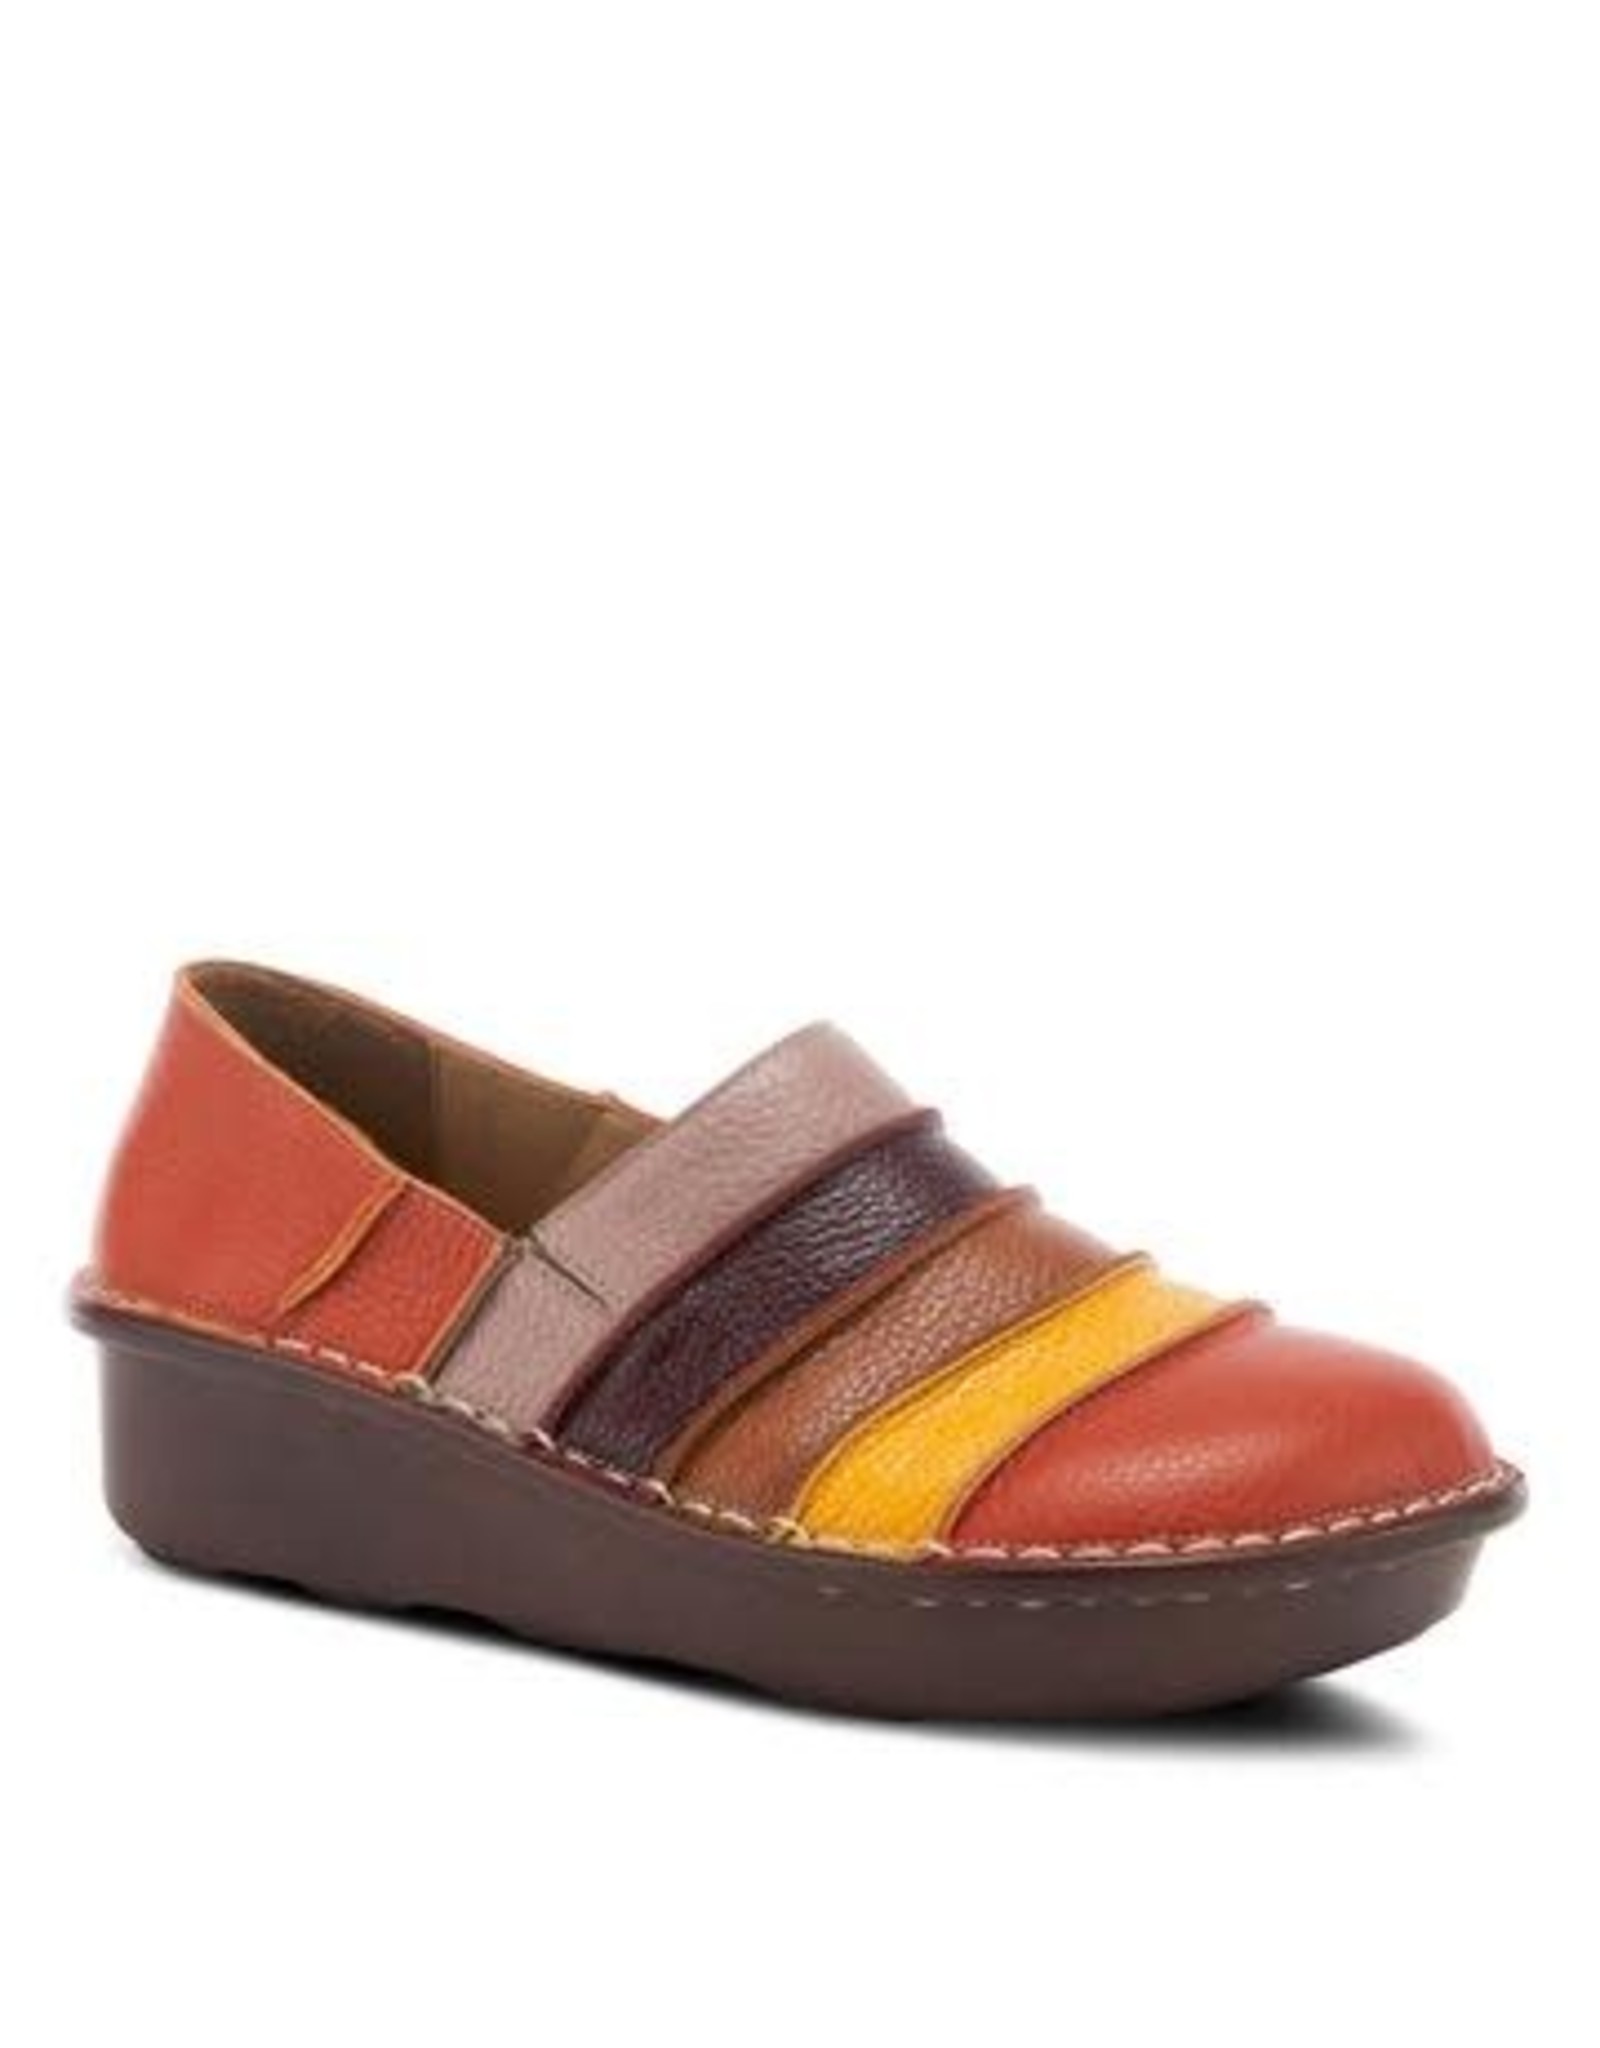 Spring Footwear Firefly Multi Leather Shoe